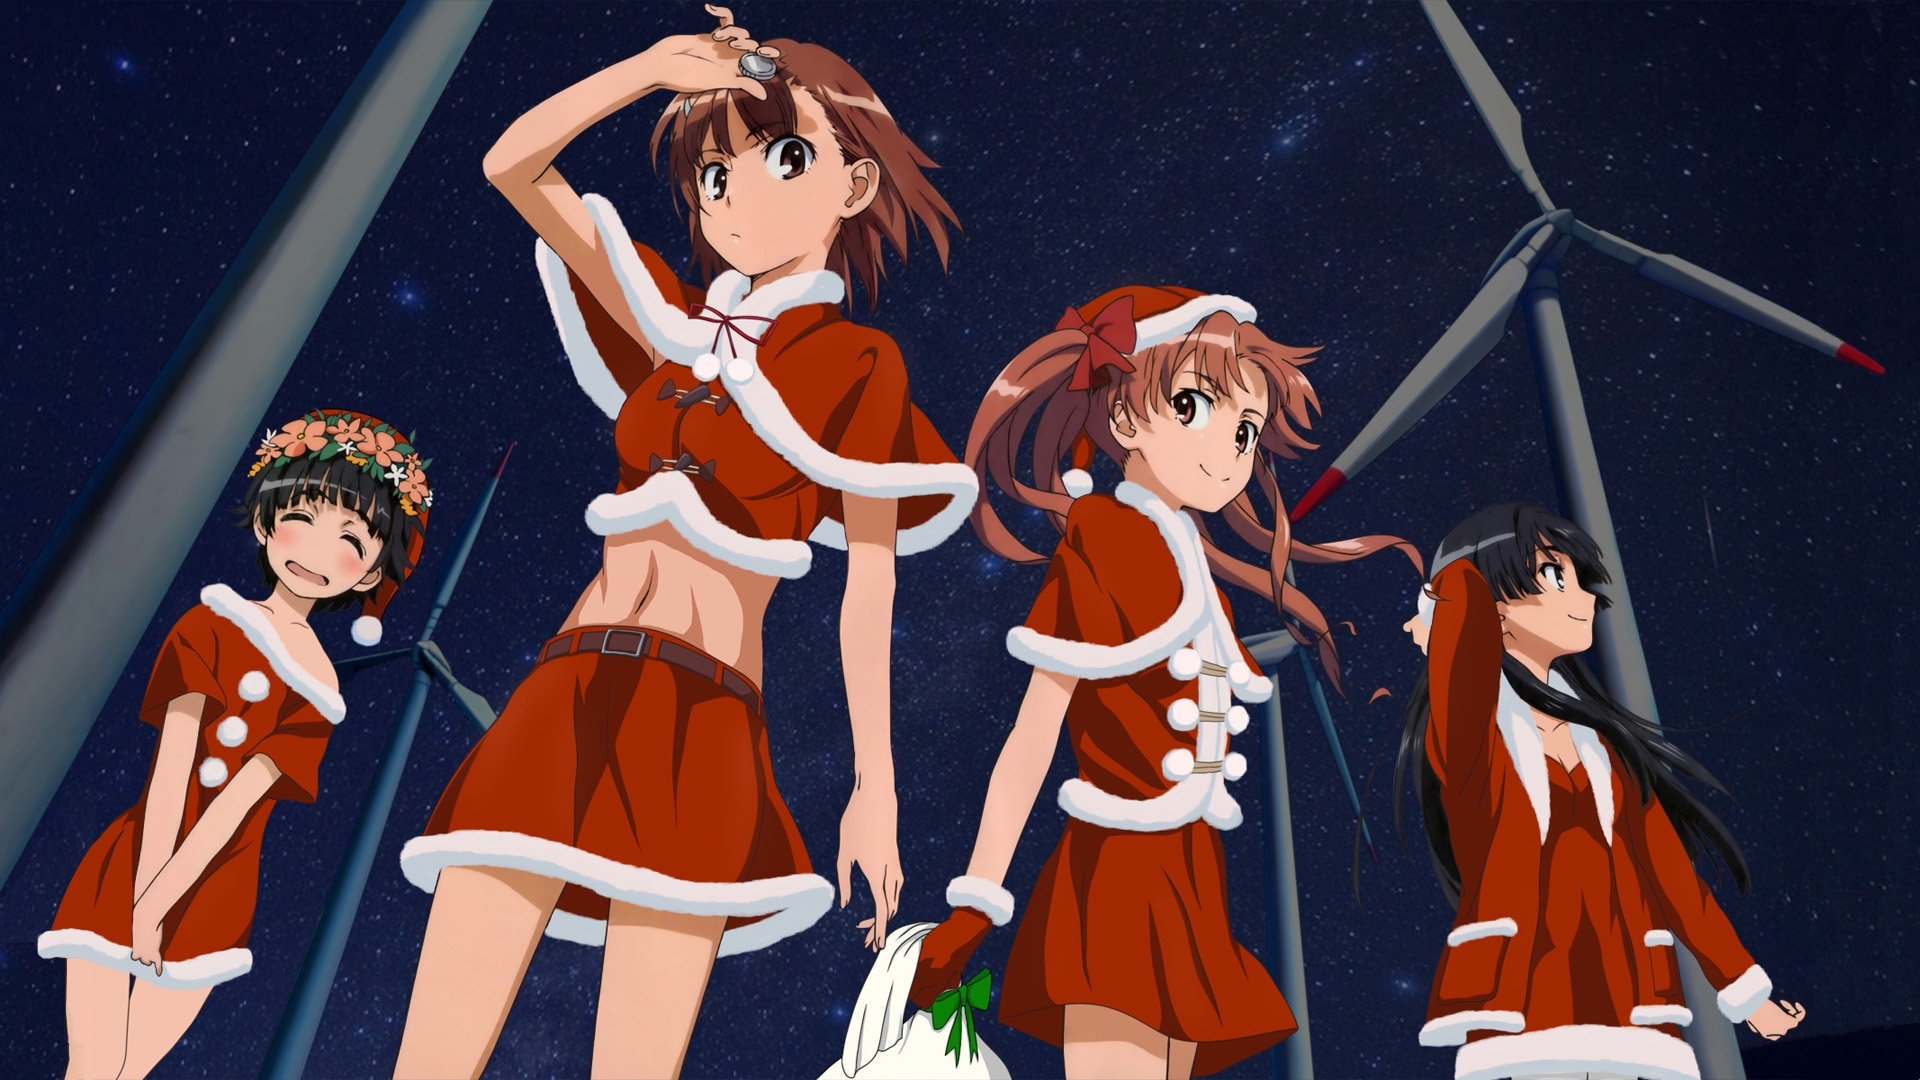 Christmas Misaka Mikoto To Aru Kagaku No Railgun To - Aru Majutsu No Index Christmas - HD Wallpaper 